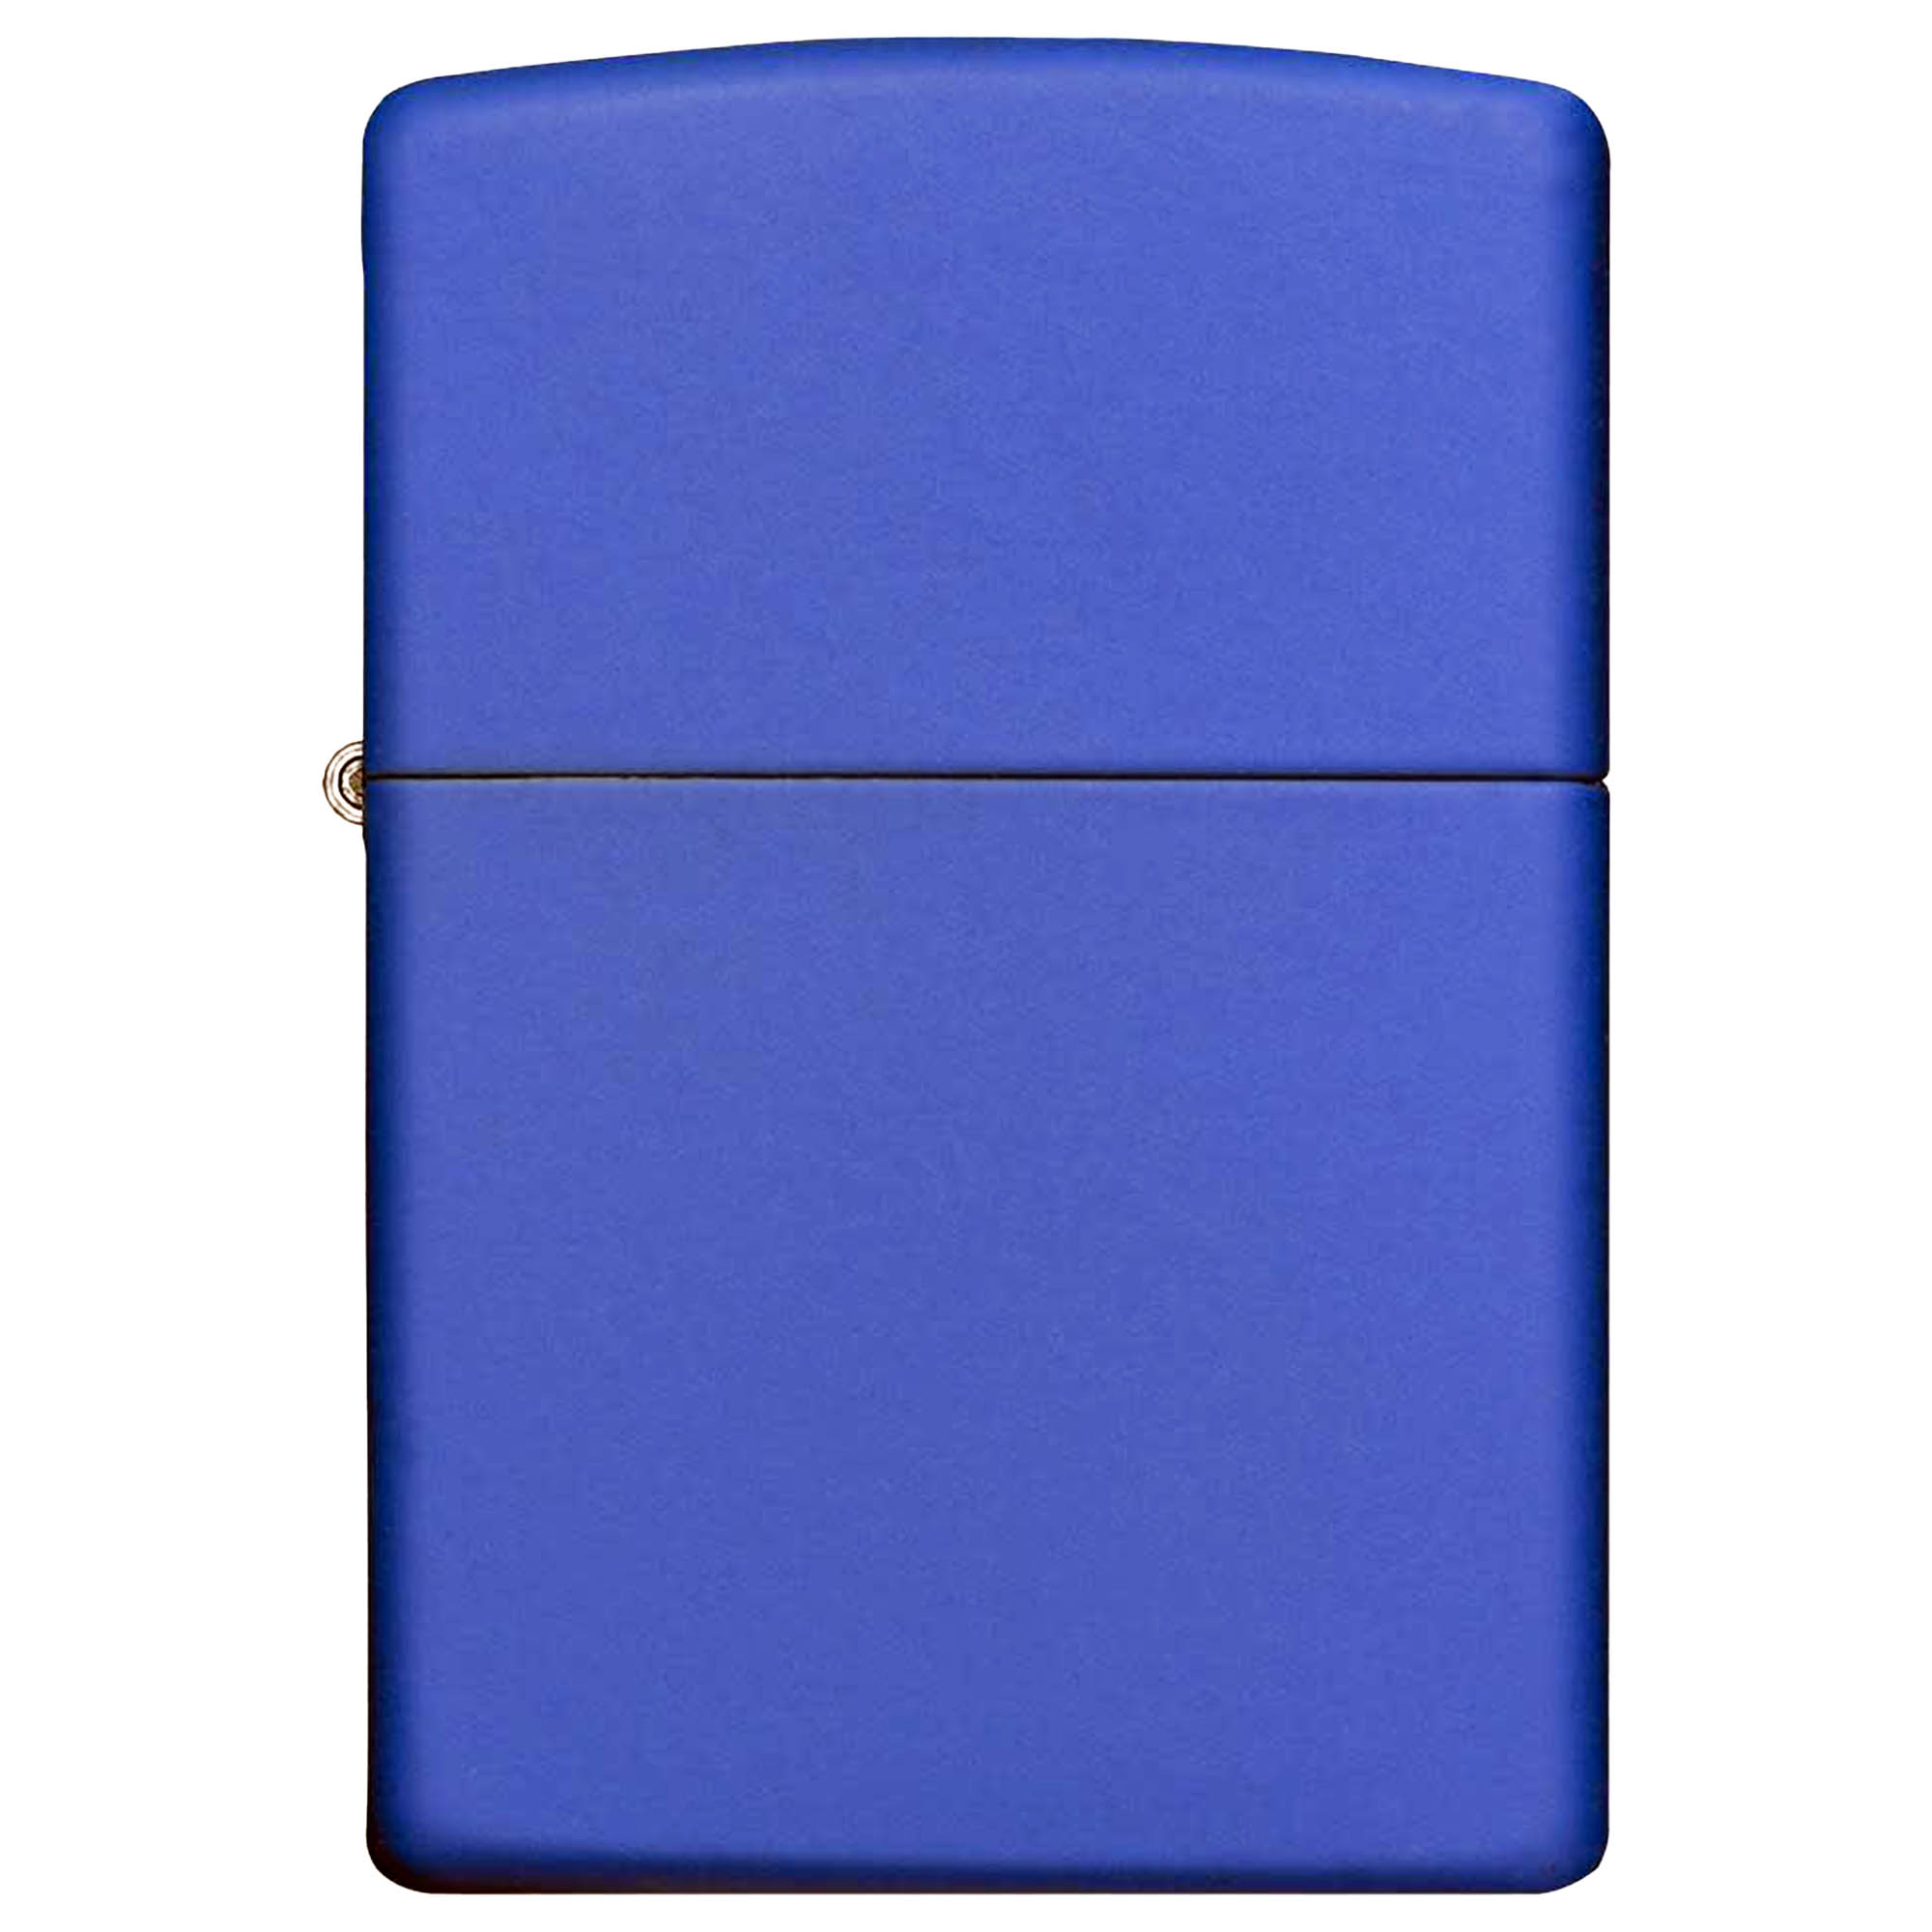 Zippo Lighter Basic Royal Blue Matte